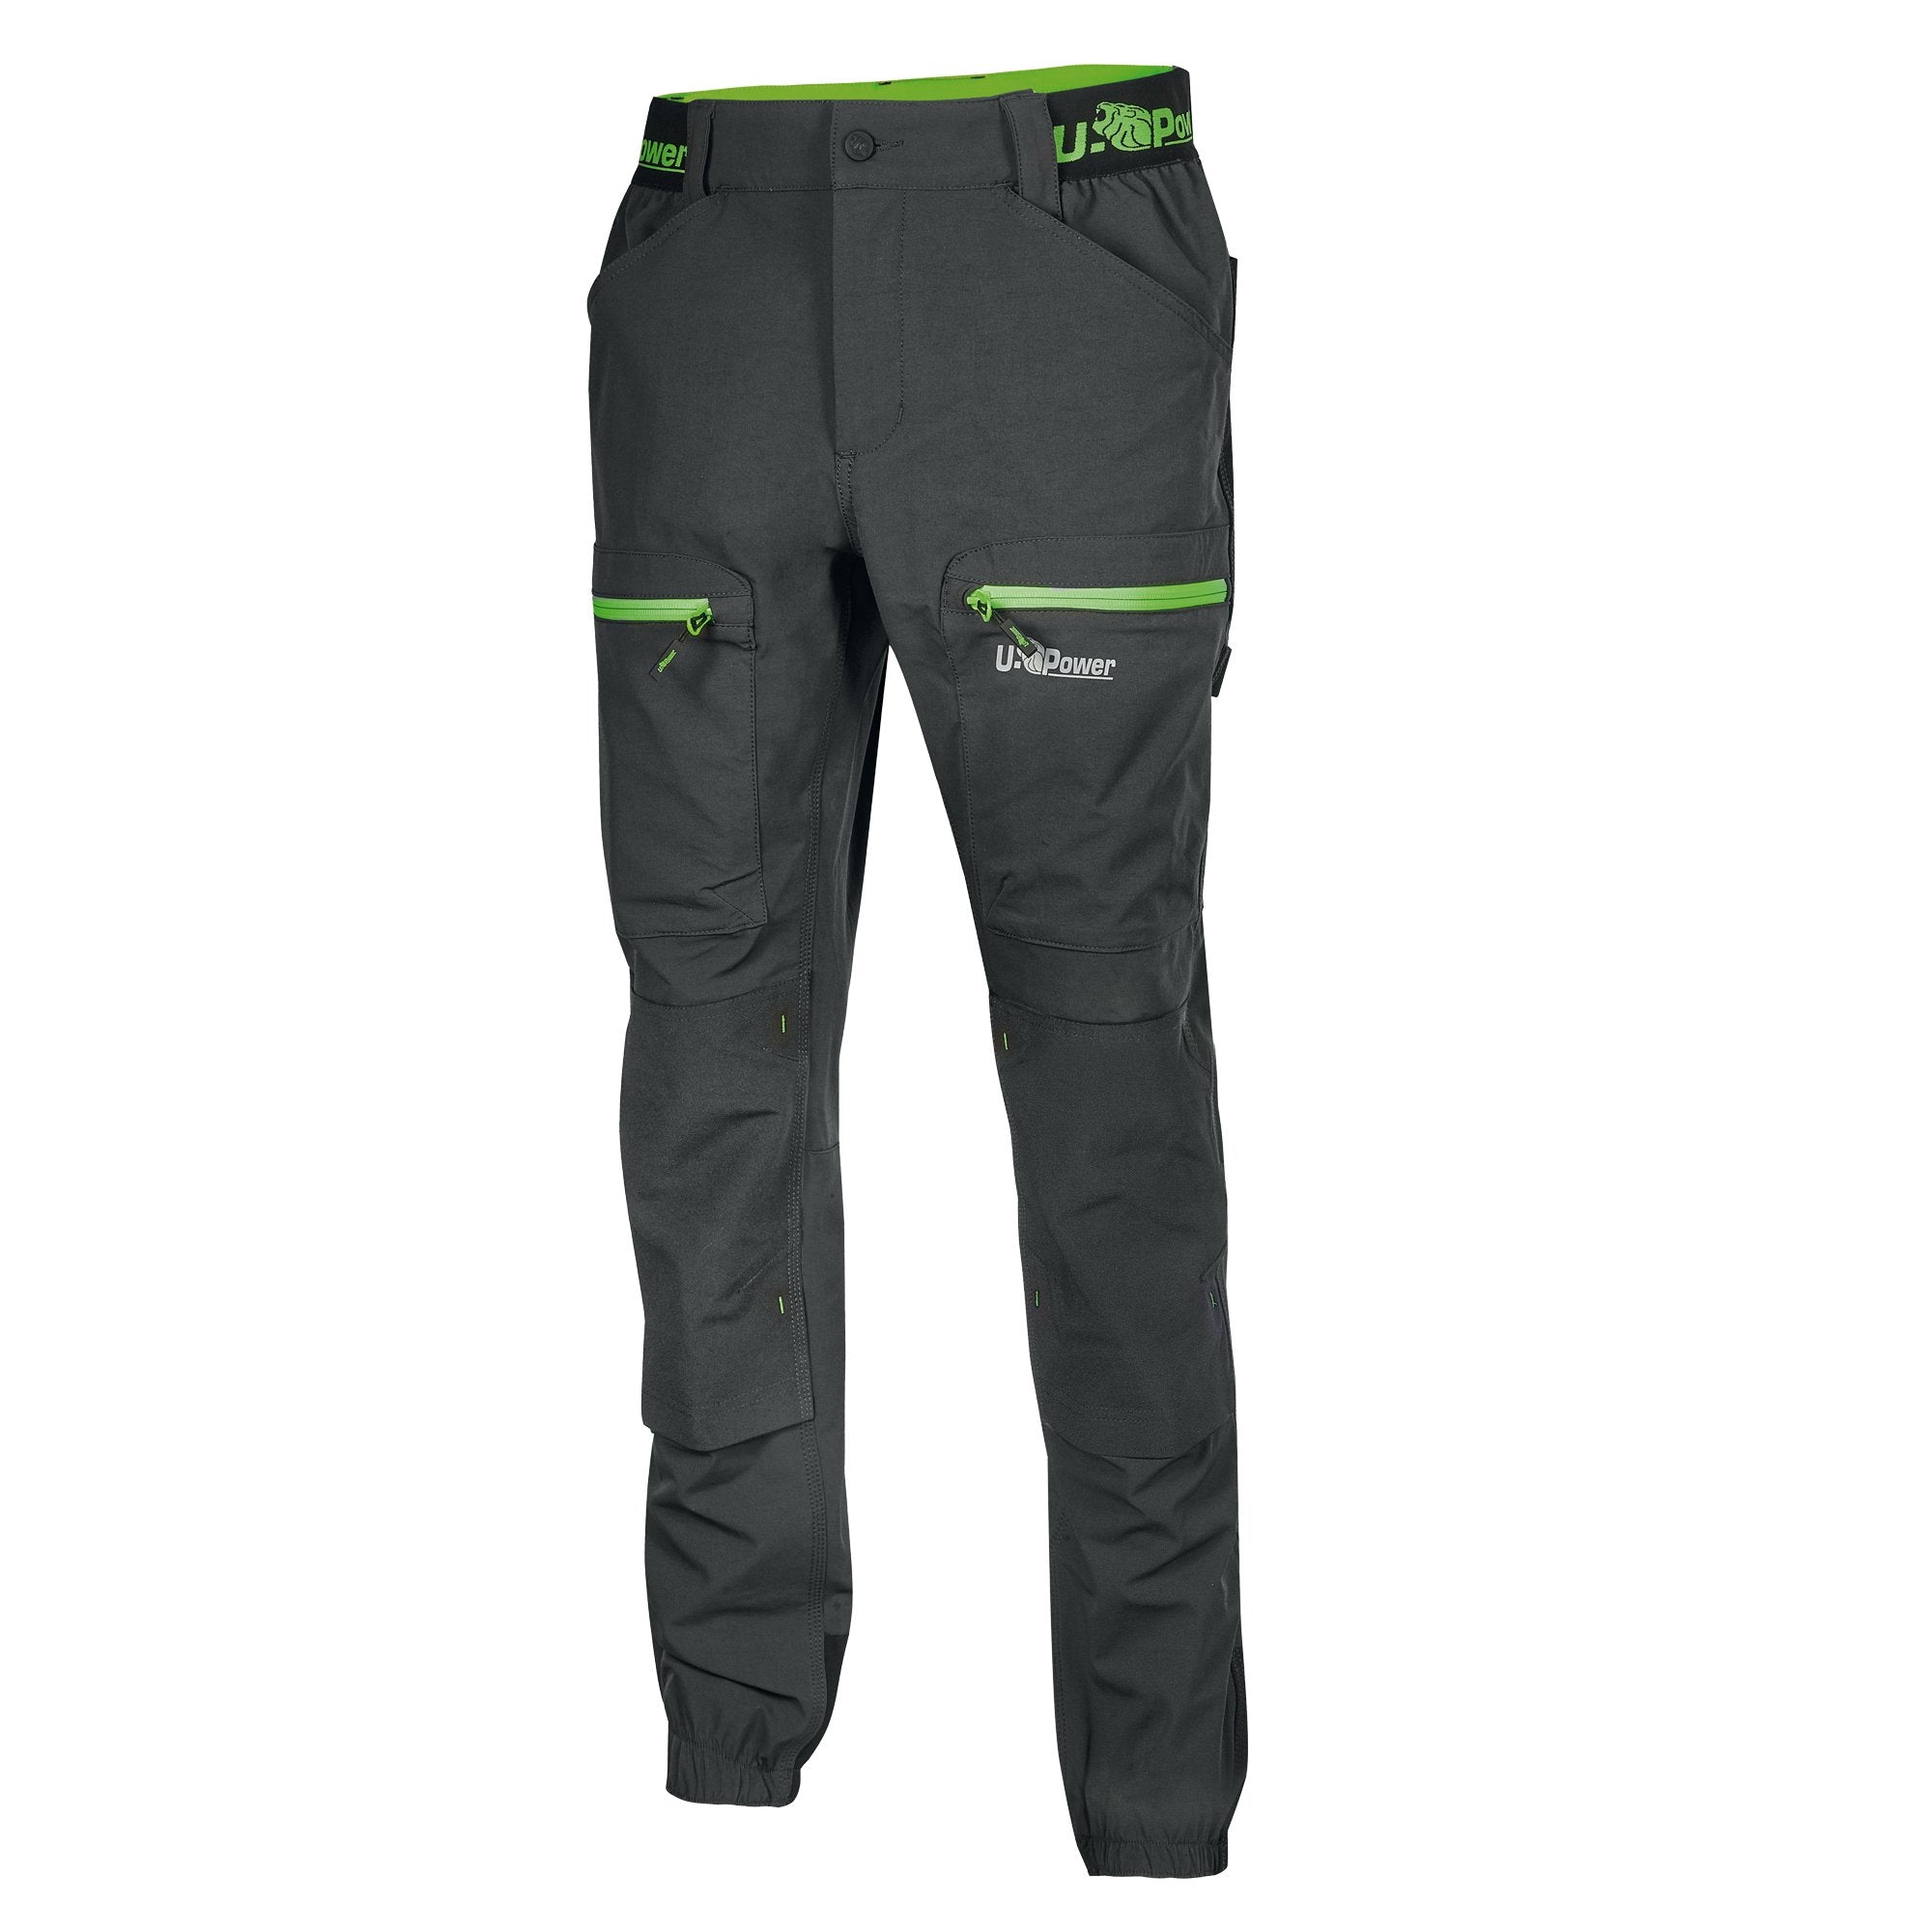 u-power-pantaloni-lavoro-harmony-taglia-l-grigio-verde